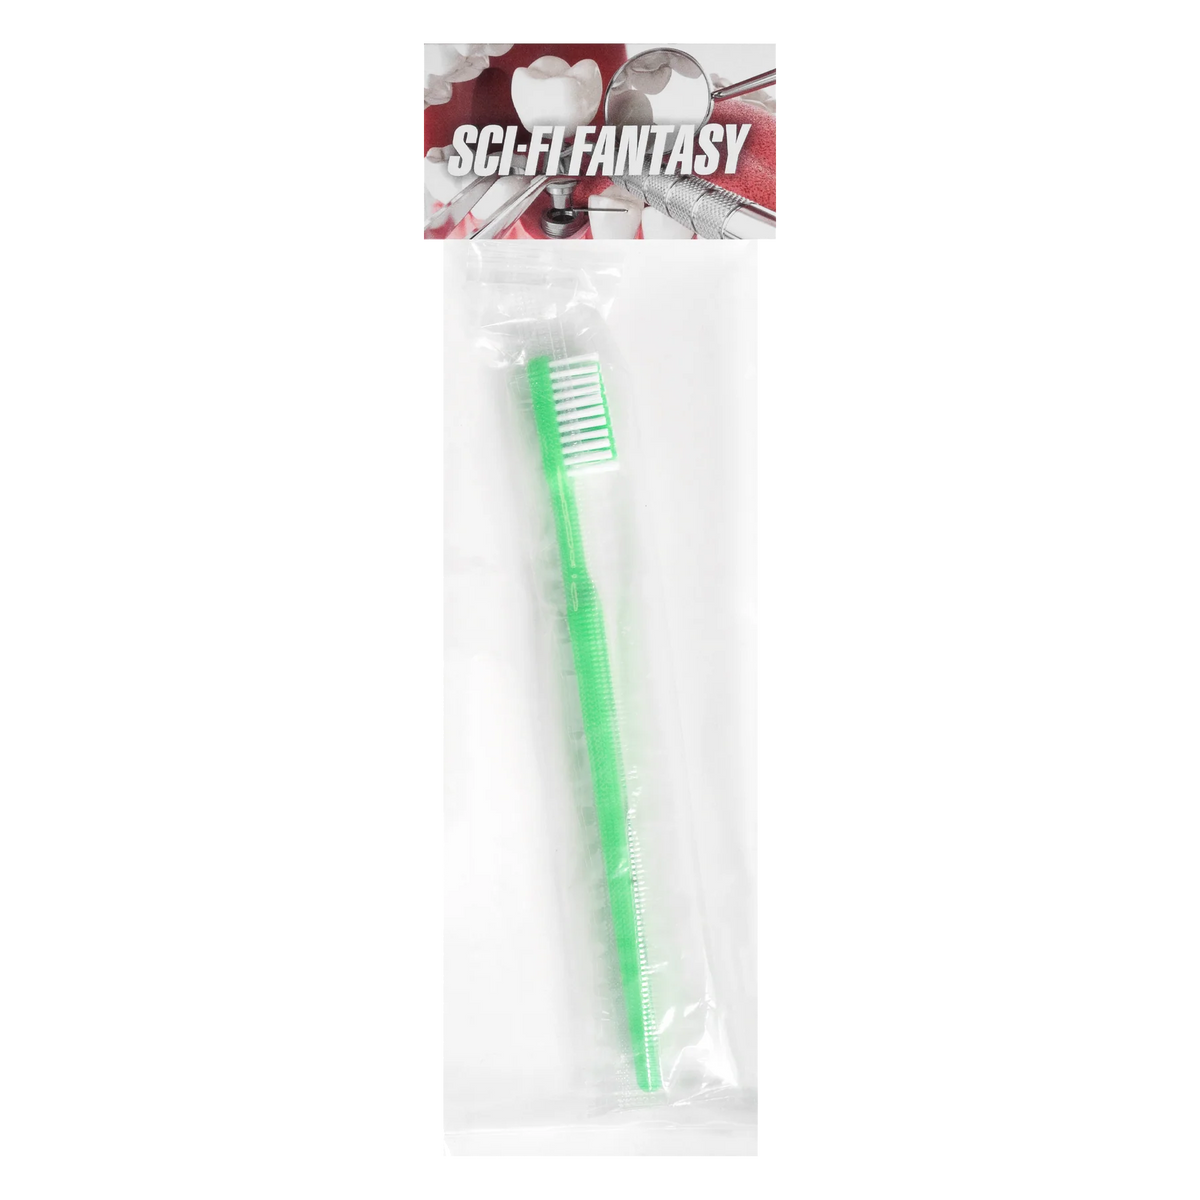 Sci-Fi Fantasy Toothbrush - Green